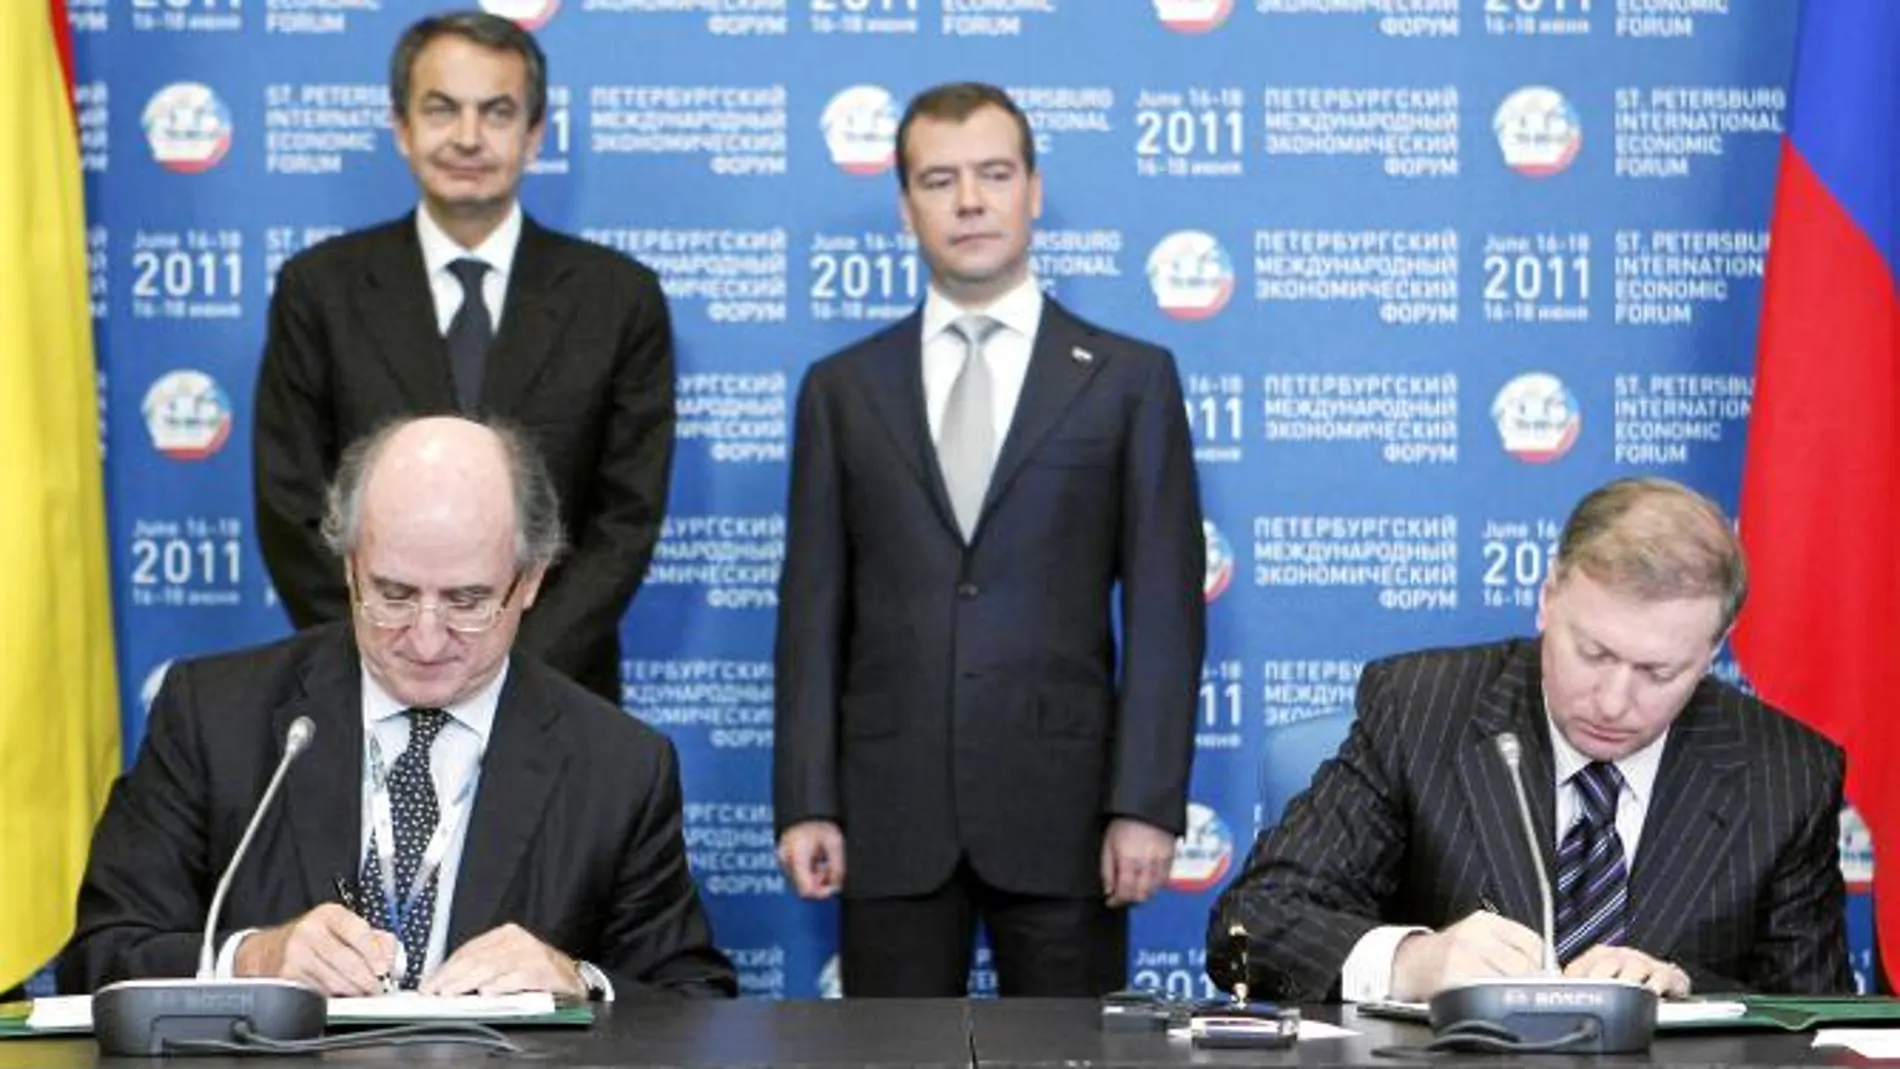 Antonio Brufau y Musá Bazáev, propietario de Alliance, firmaron en Moscú el acuerdo